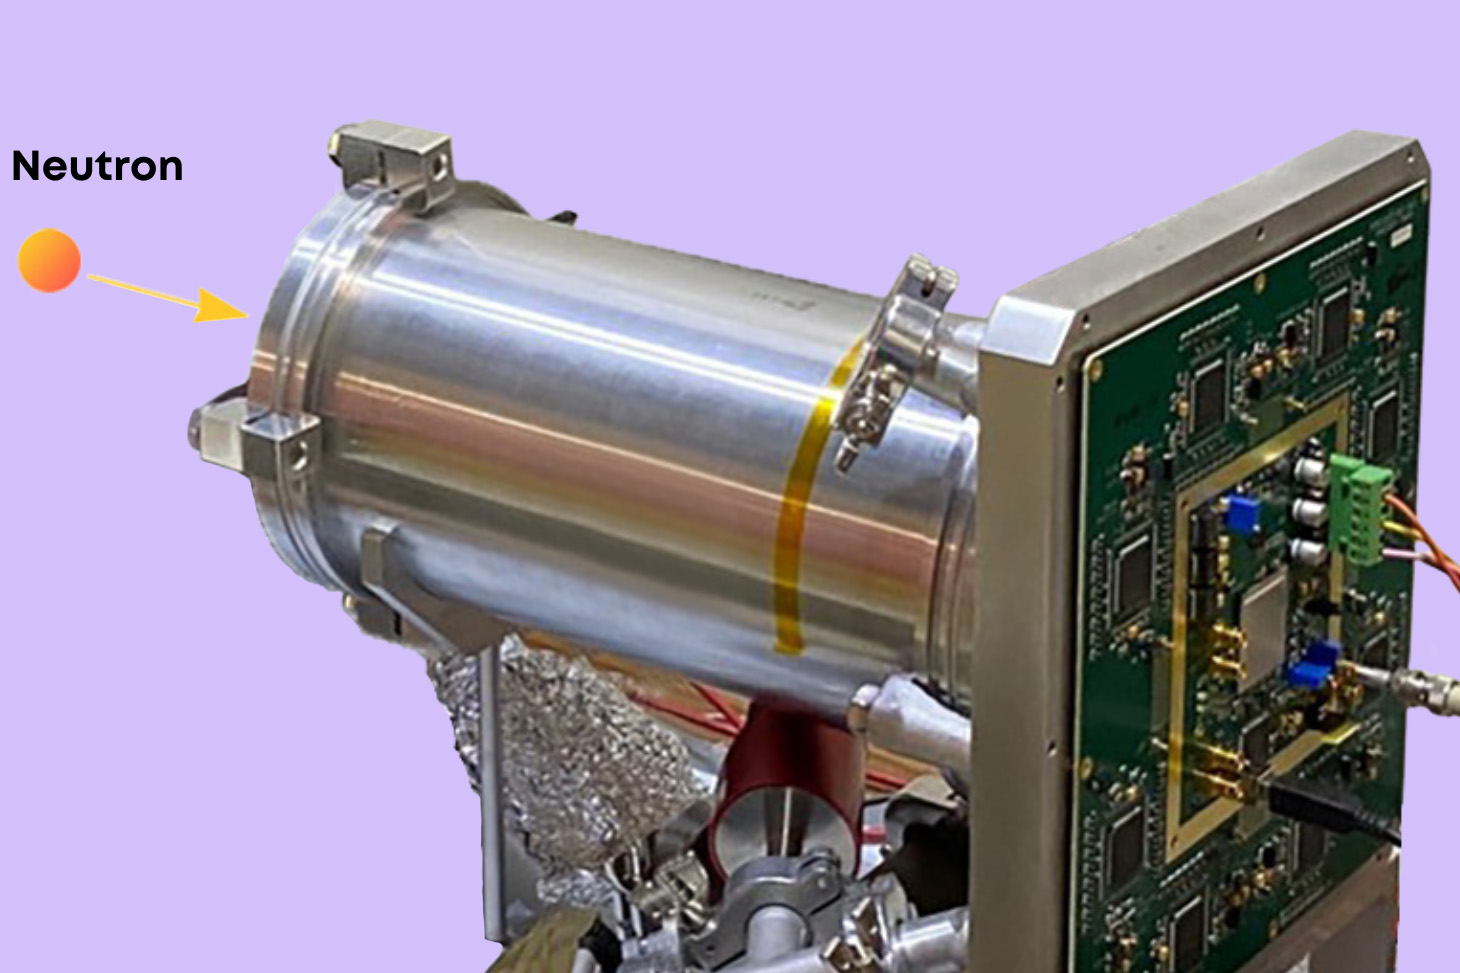 MIMAC-512 n'observe pas directement les neutrons, mais les effets qu'ils produisent dans une chambre remplie d'hélium gazeux. Image : LPSC IN2P3